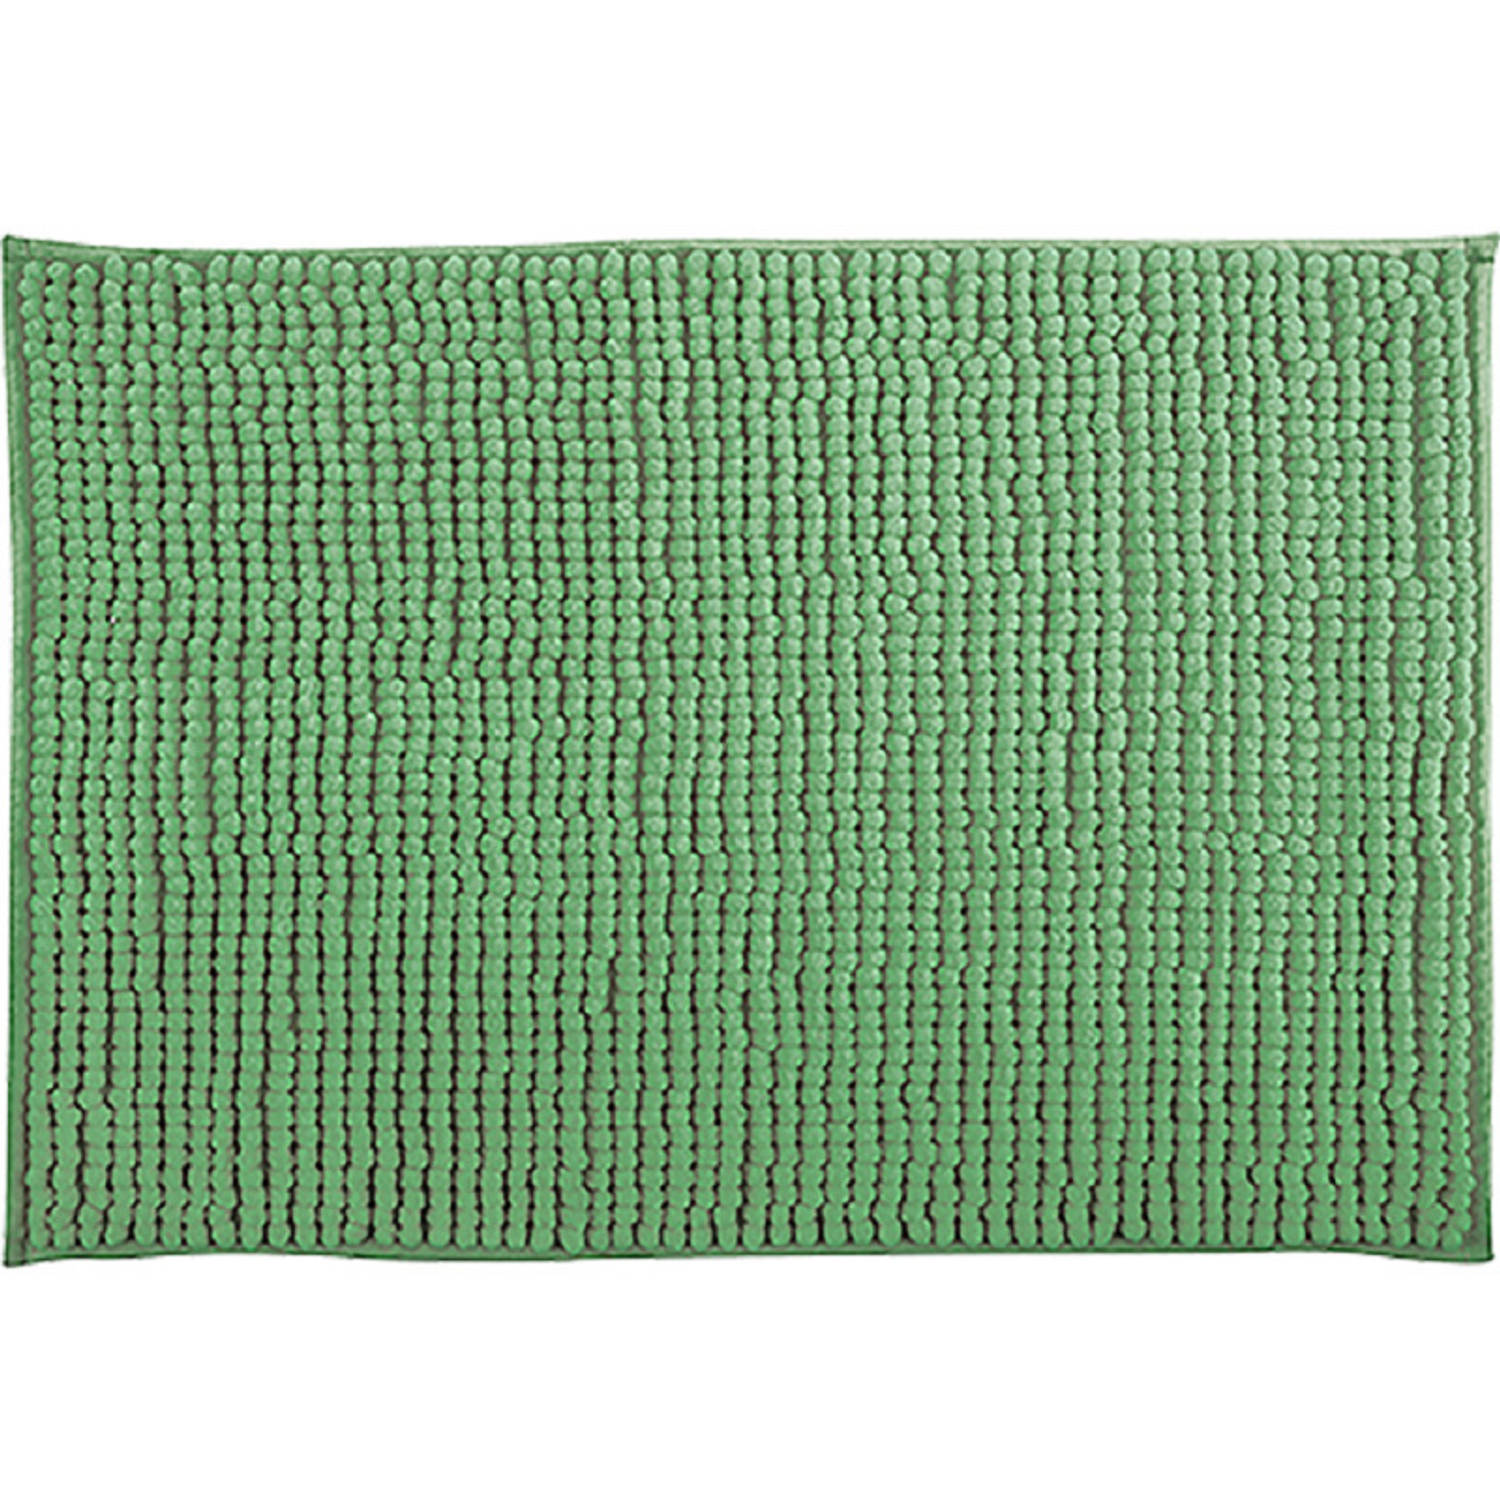 MSV Badkamerkleed-badmat tapijtje voor op de vloer groen 50 x 80 cm Microvezel Badmatjes